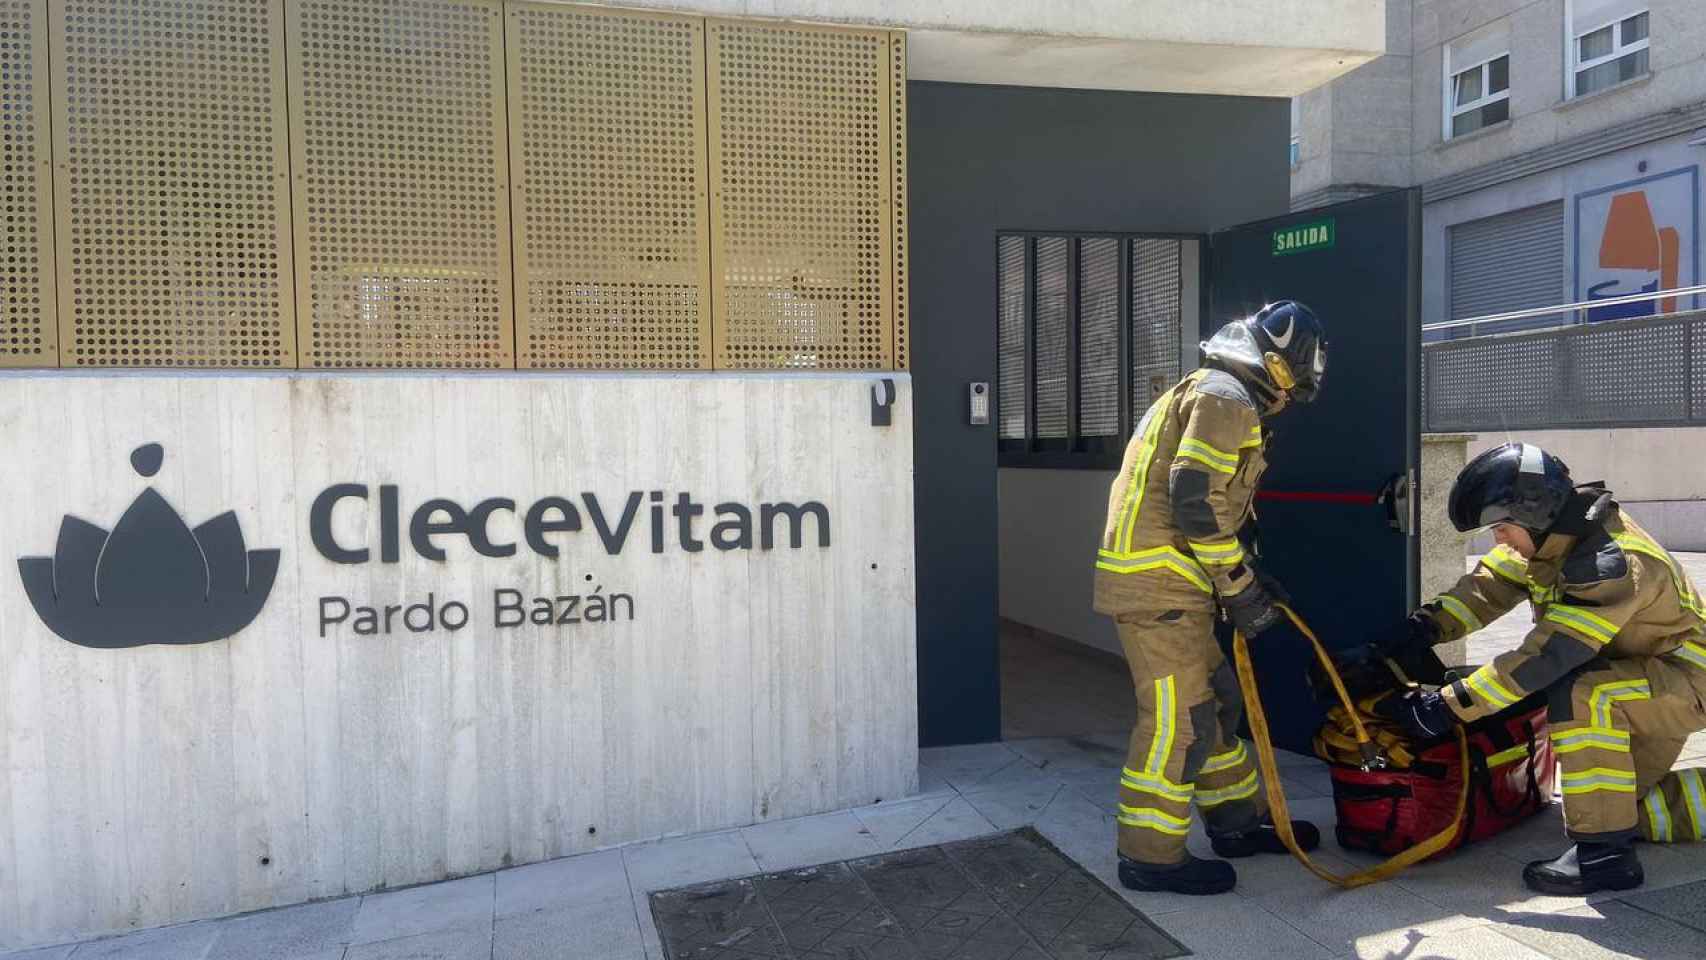 Los bomberos trabajan durante el simulacro de incendios en la residencia para personas mayores CleceVitam Pardo Bazán, en Vigo